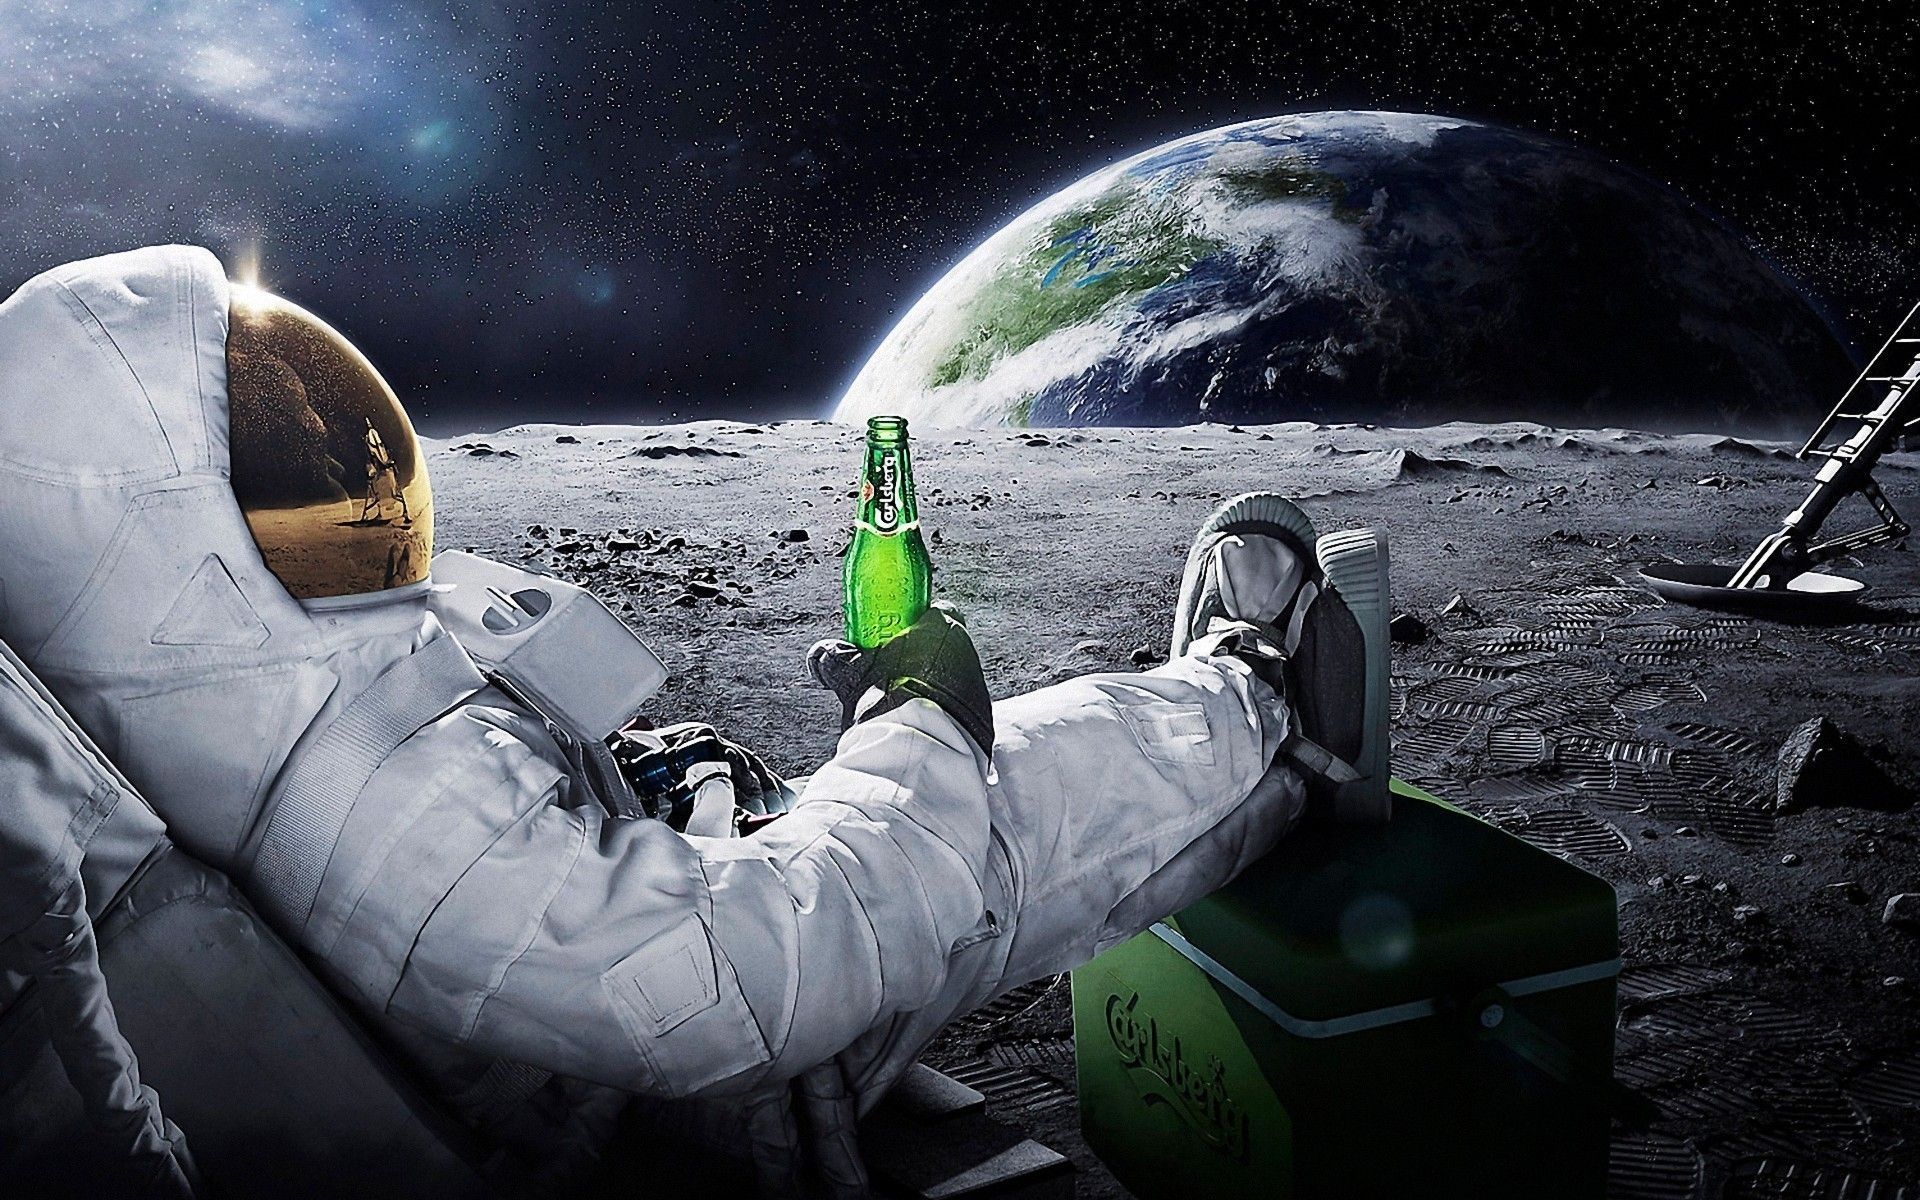 Wallpaper Carlsberg Beer in Space - HD Wallpaper Expert